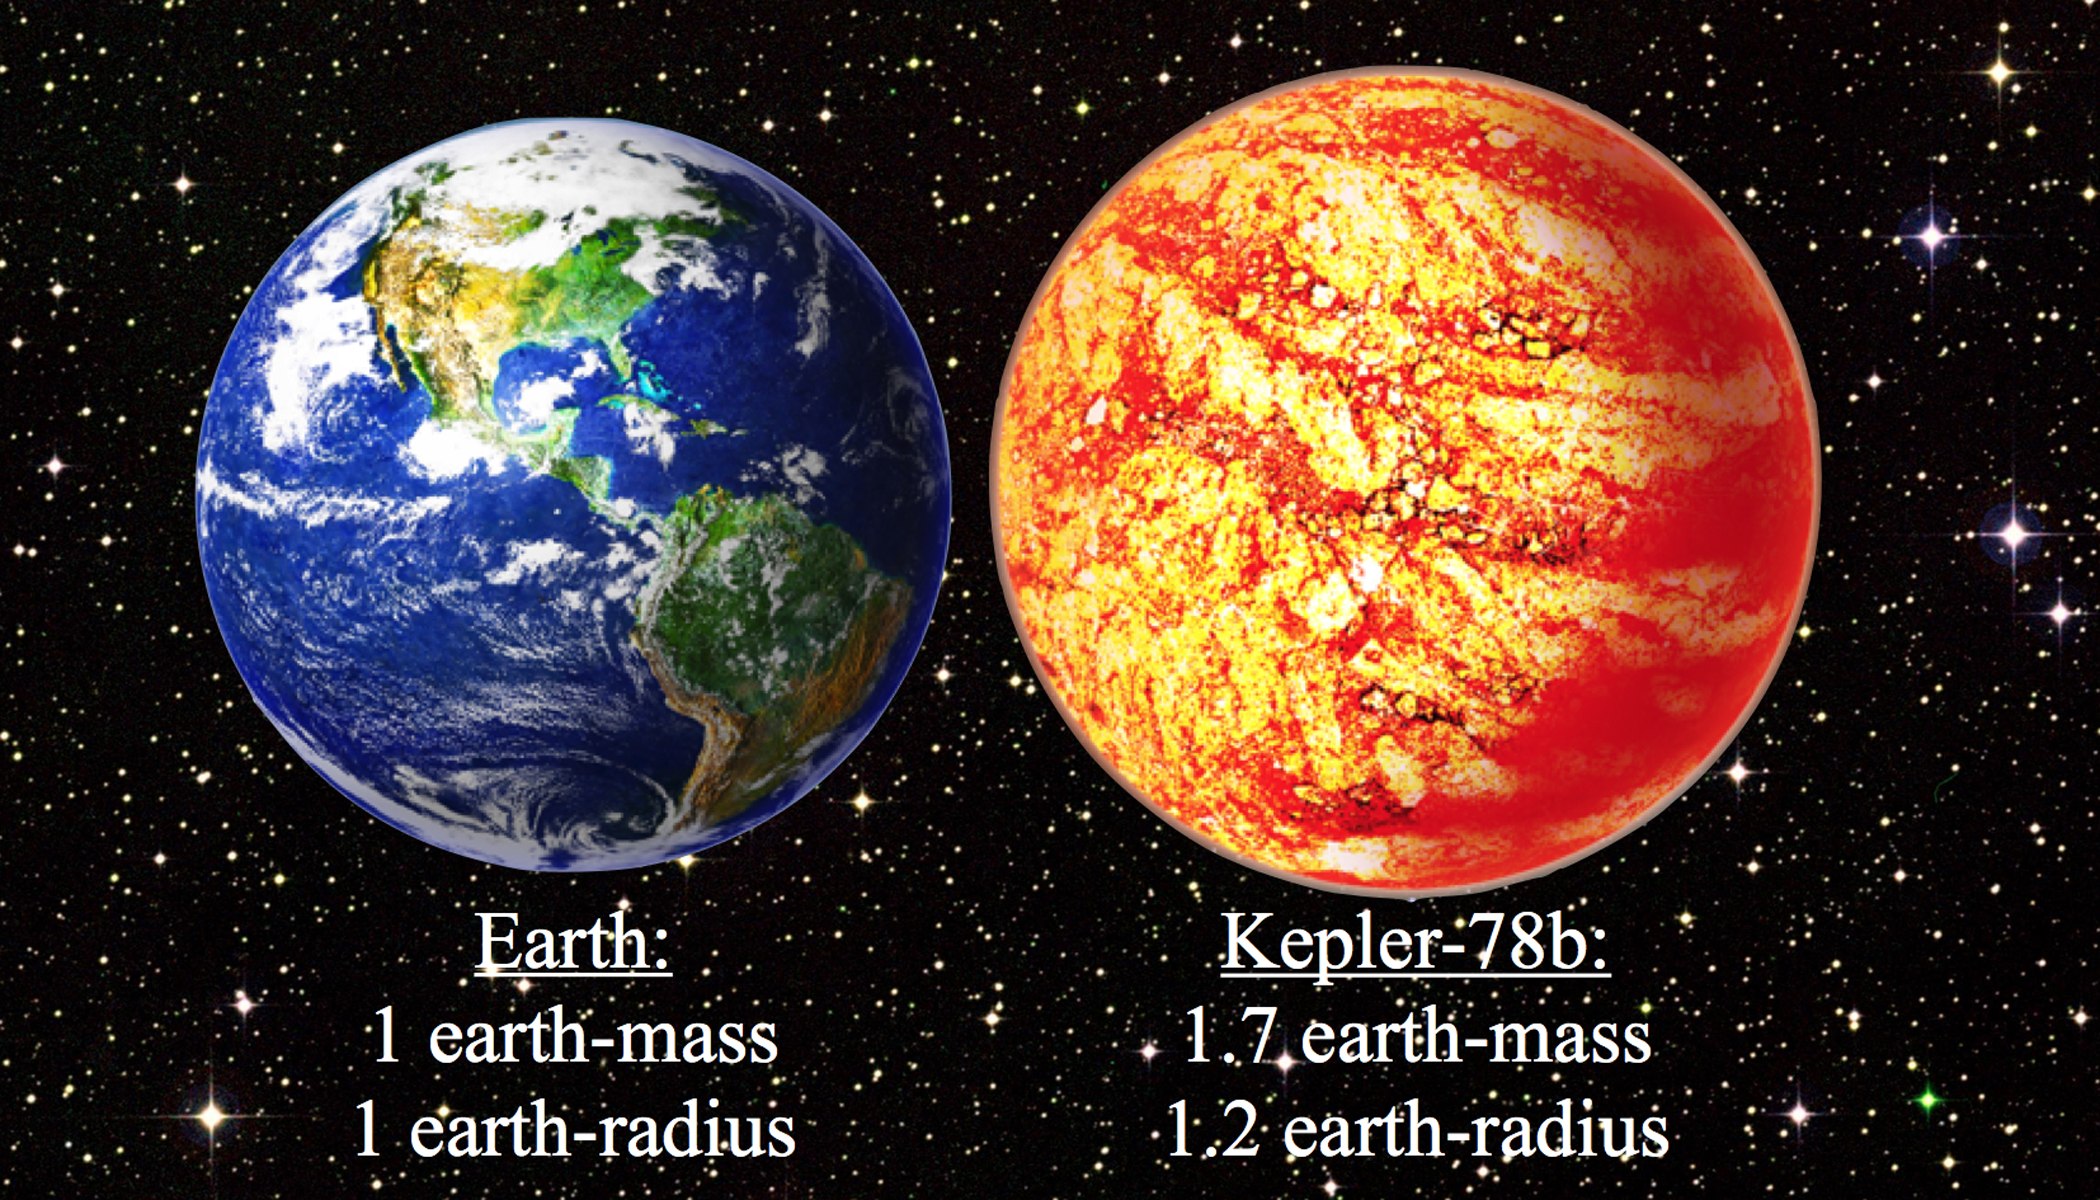 cfa_-_earth_and_kepler-78b_comparison-sm_0